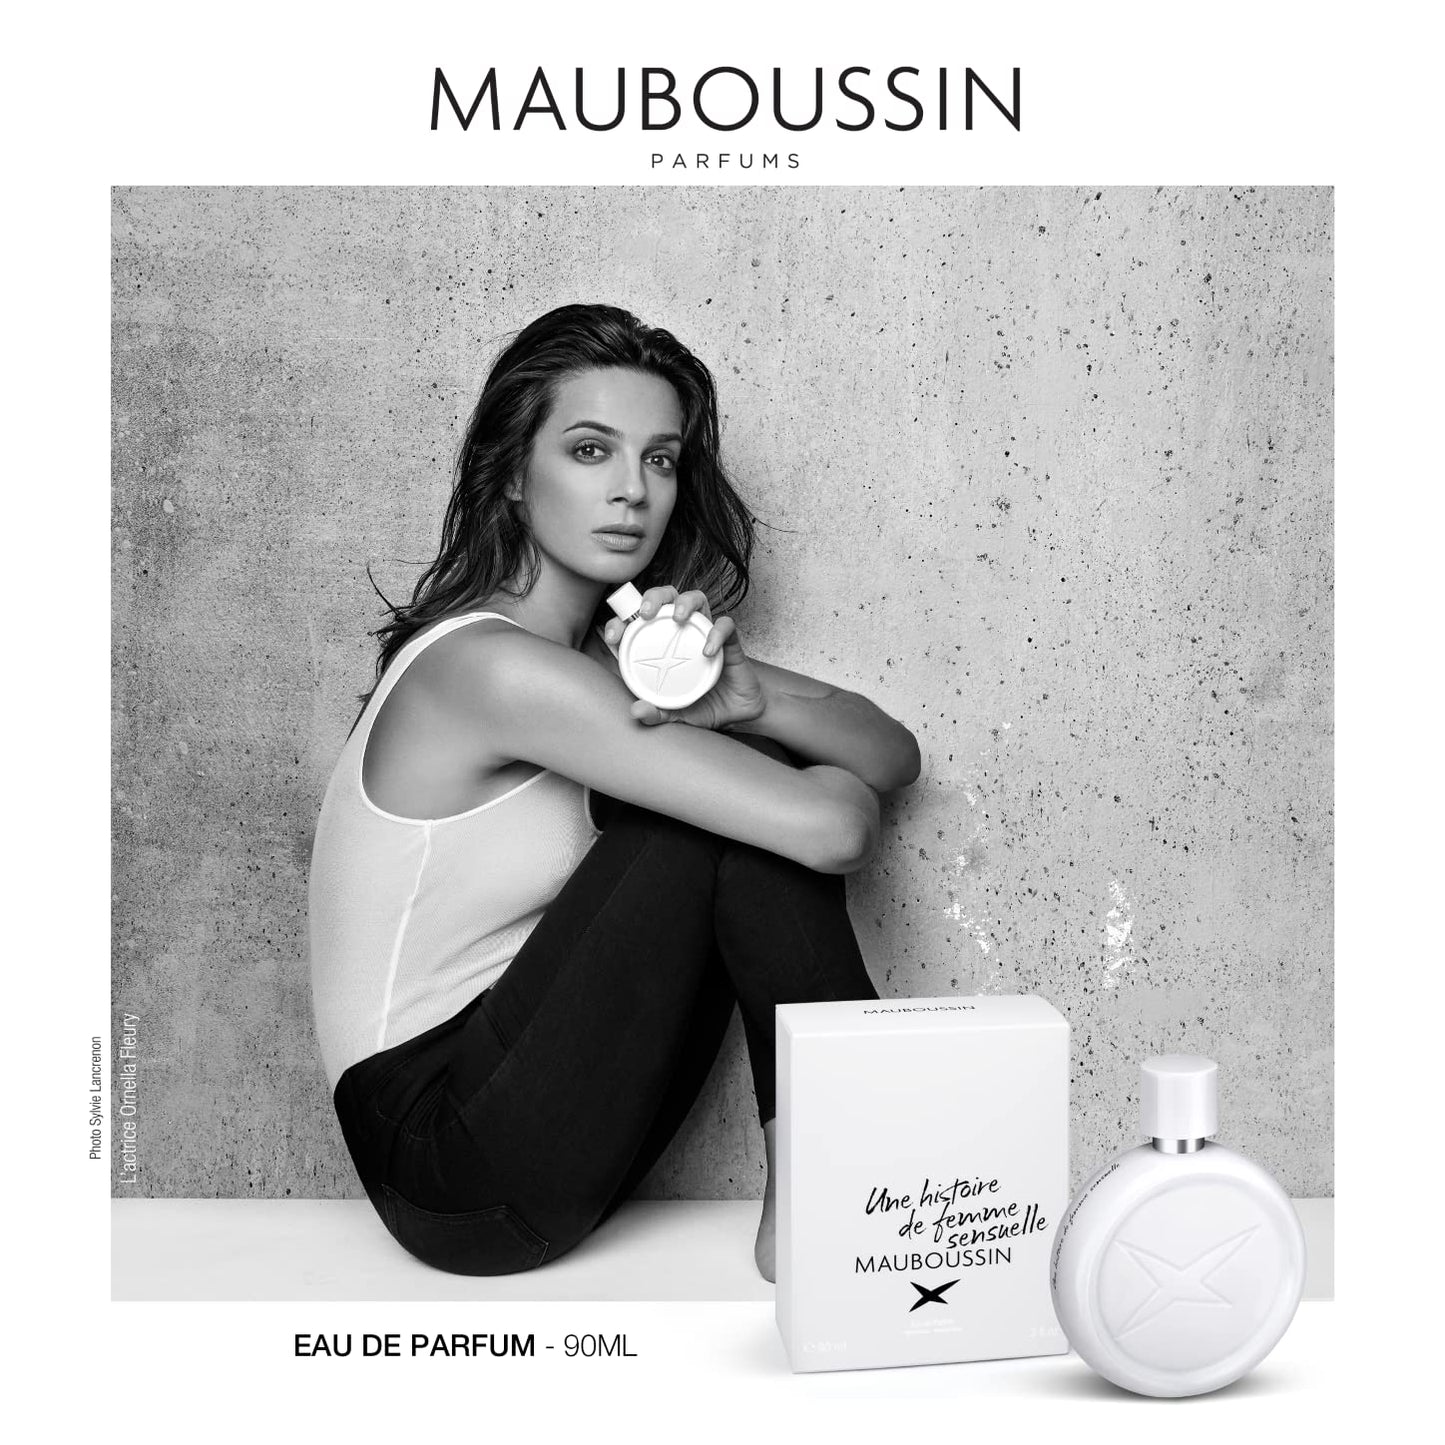 Mauboussin - Une Histoire De Femme Sensuelle 90ml (3 Fl Oz) - Eau de Parfum for Women - Floral, Musky & Gourmand Scents